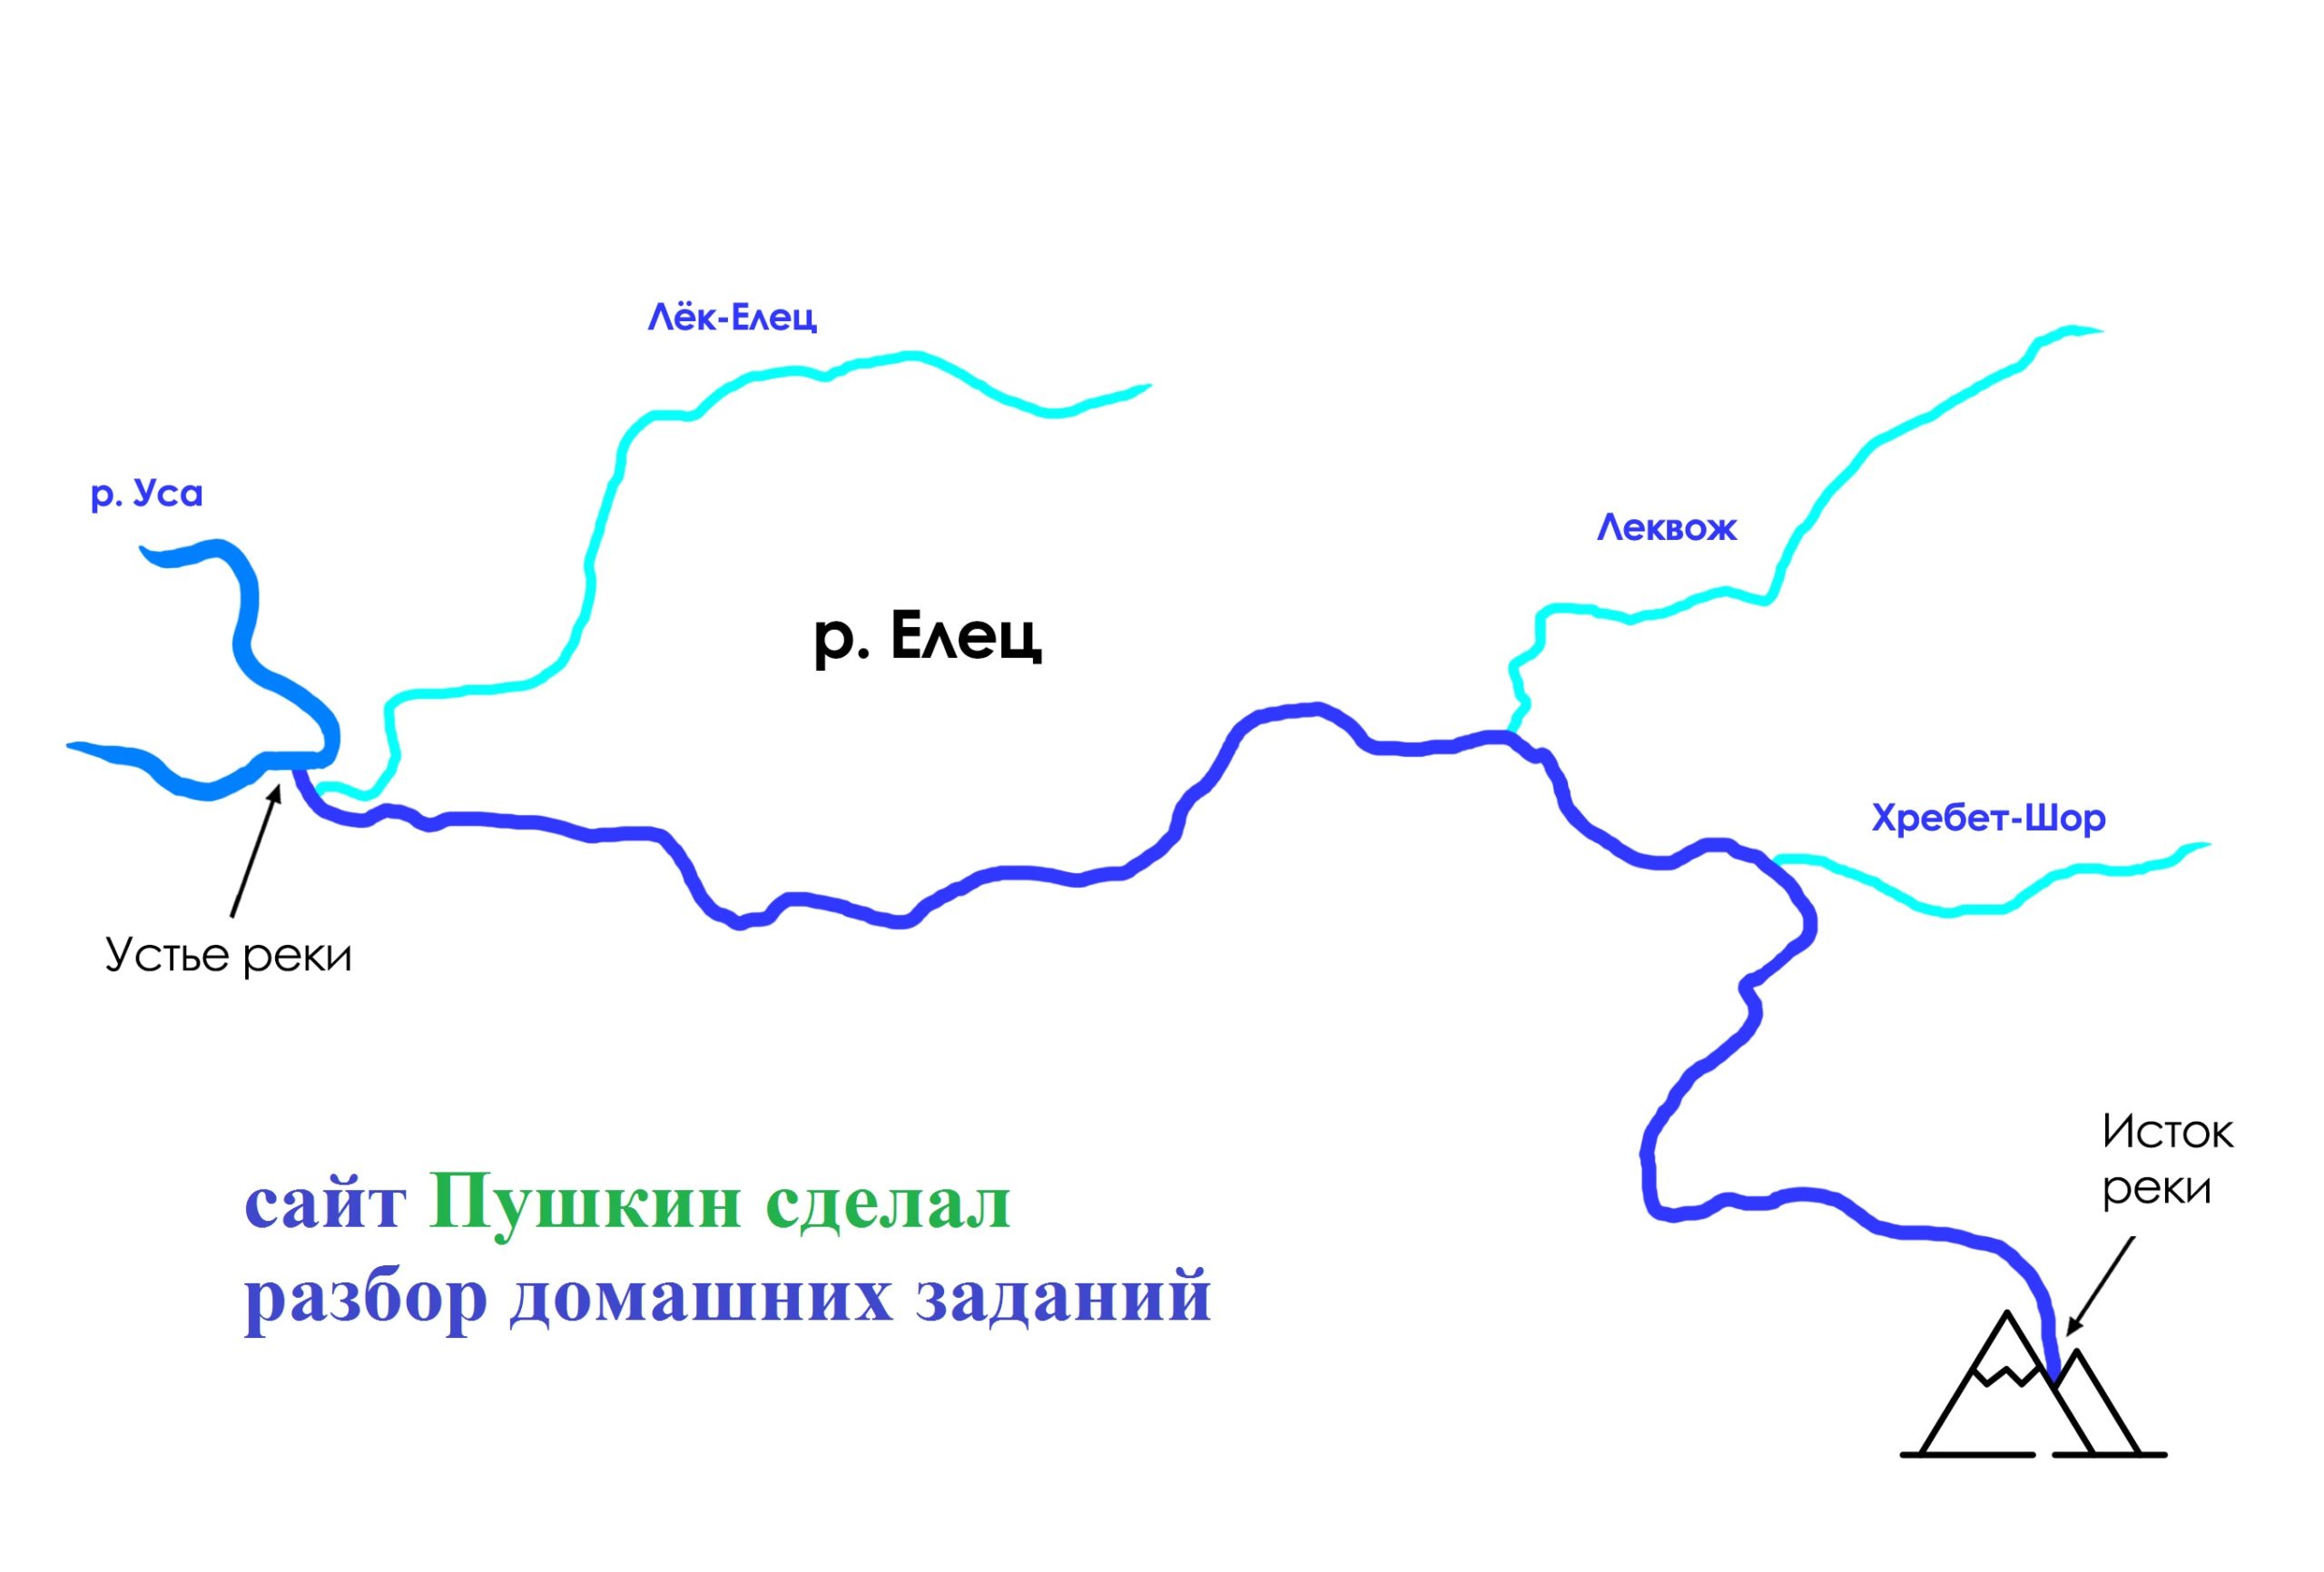 начало реки москва